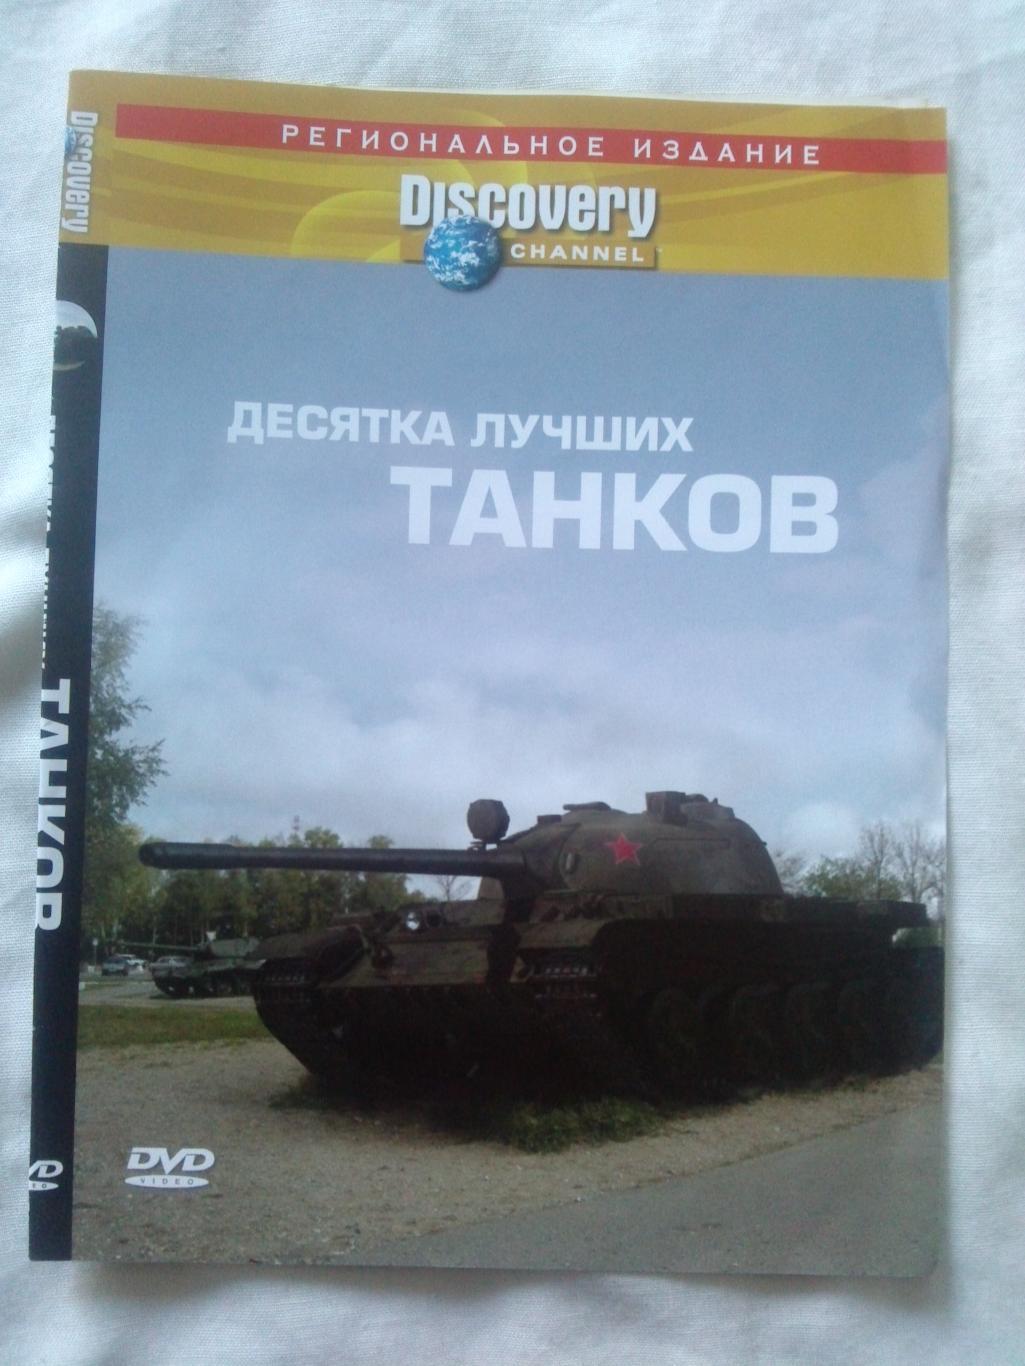 DVD Discovery : 10 лучших танков (Военная техника) лицензия (Танк) новый